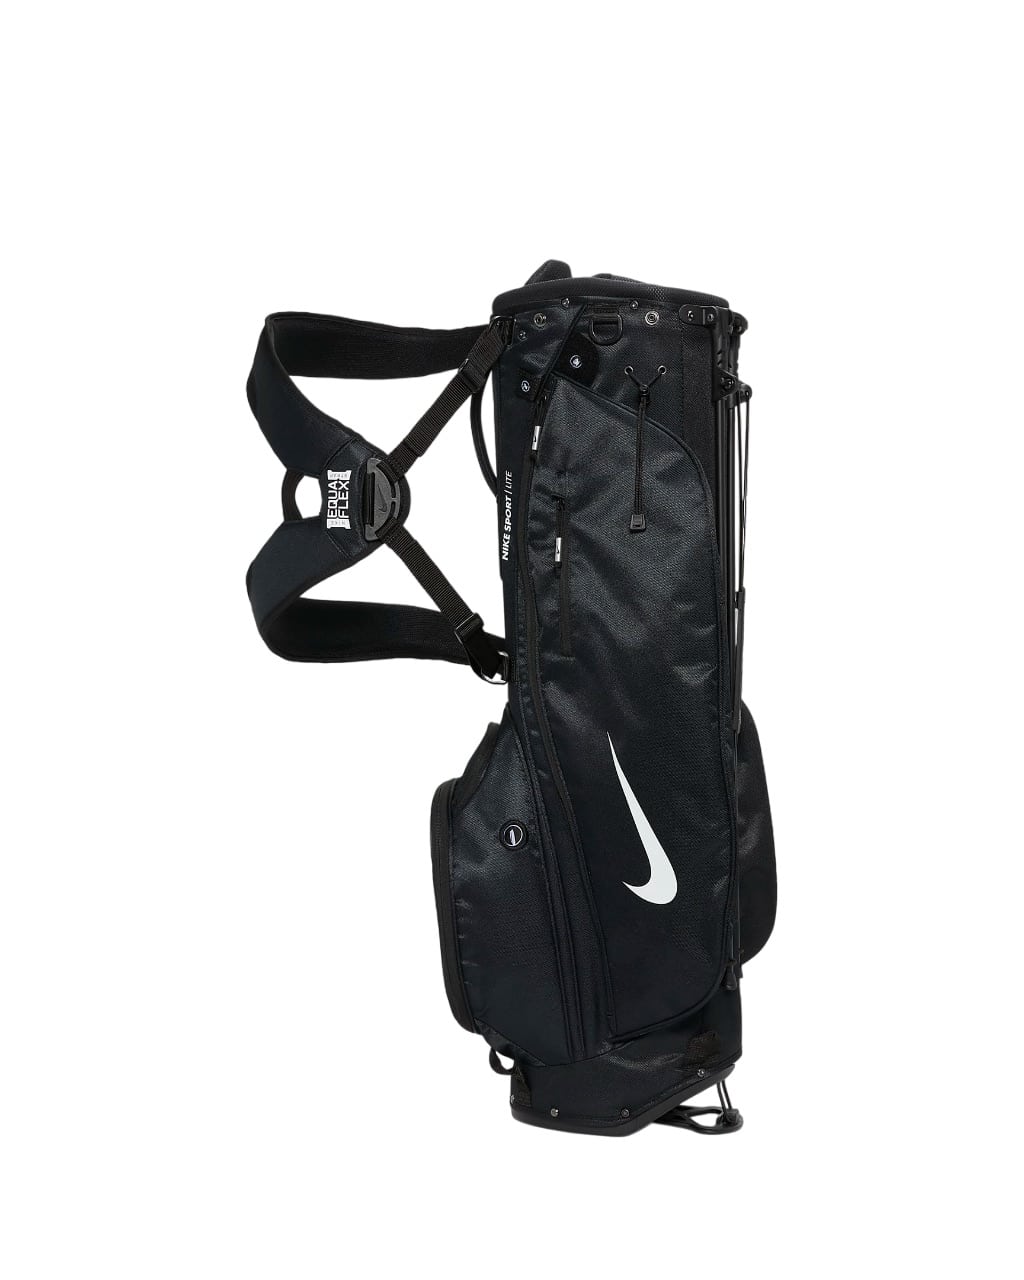 sport lite golf bag 1Ch6SL Photoroom.png Photoroom